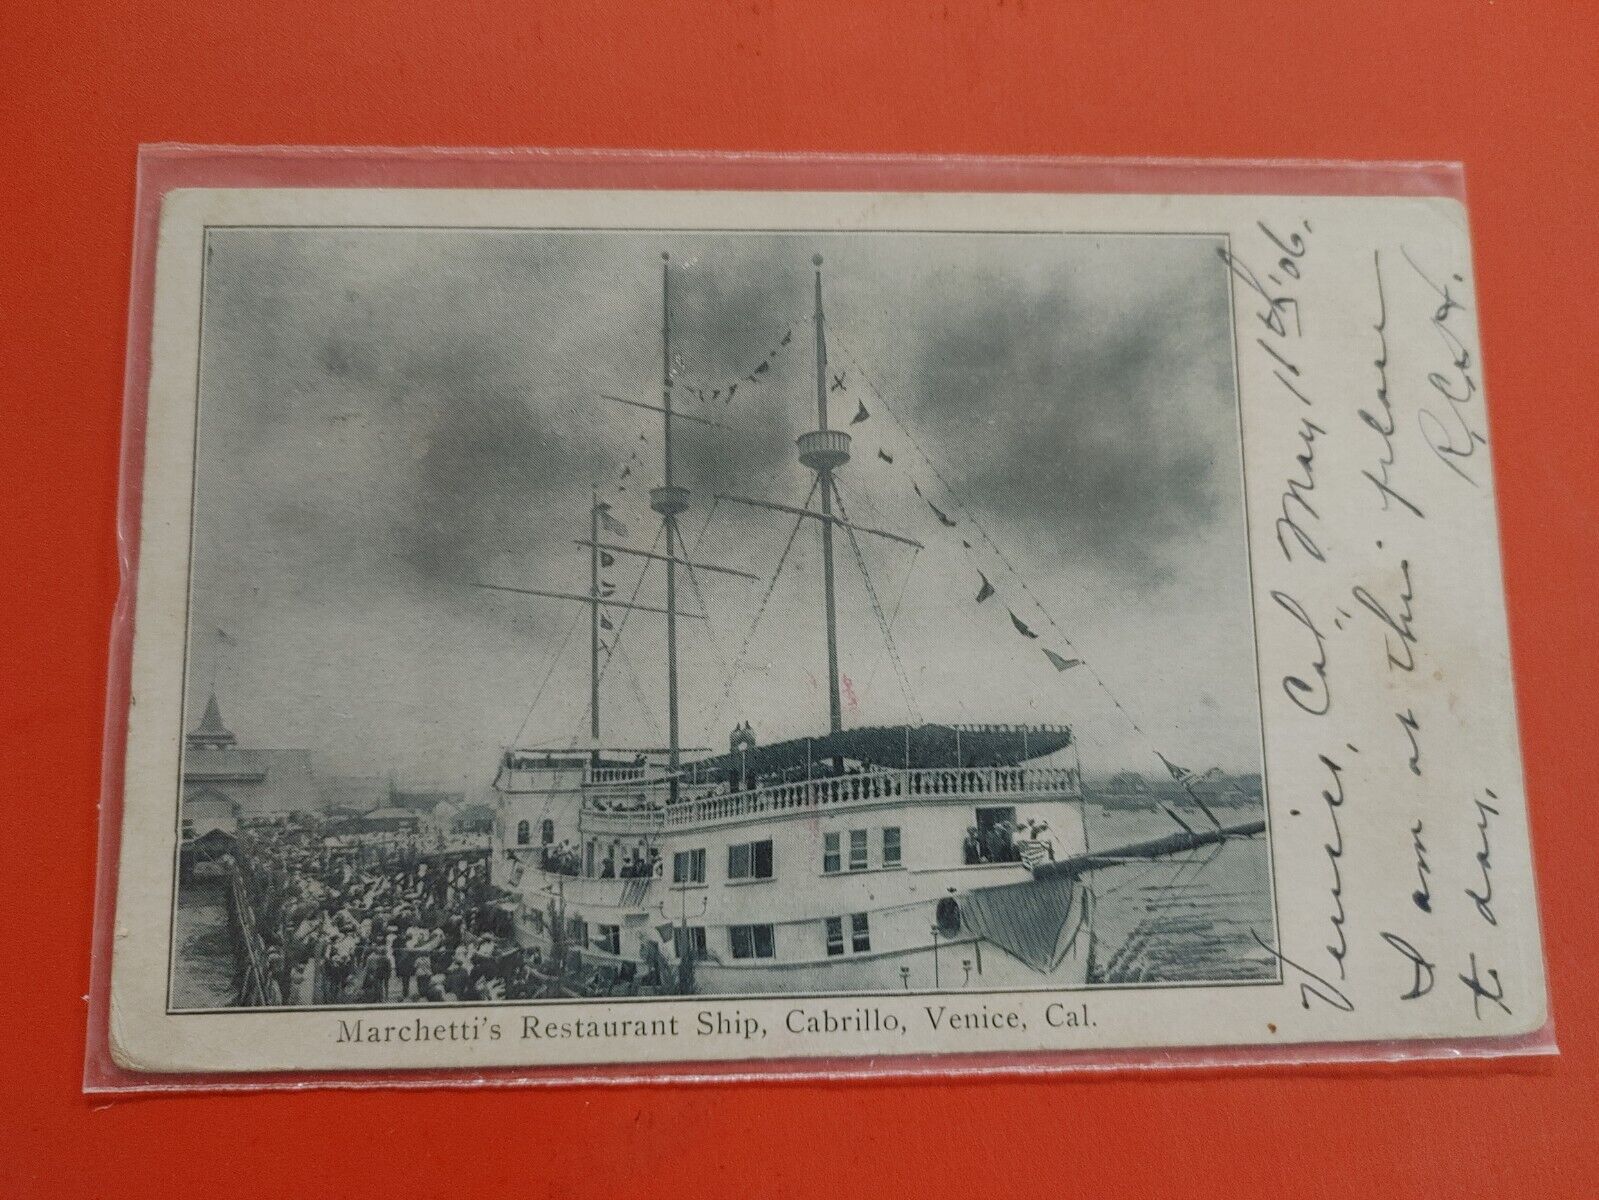 Marchetti's Restaurant Ship, Cabrillo, Venice,  CA, Early Postcard P007G